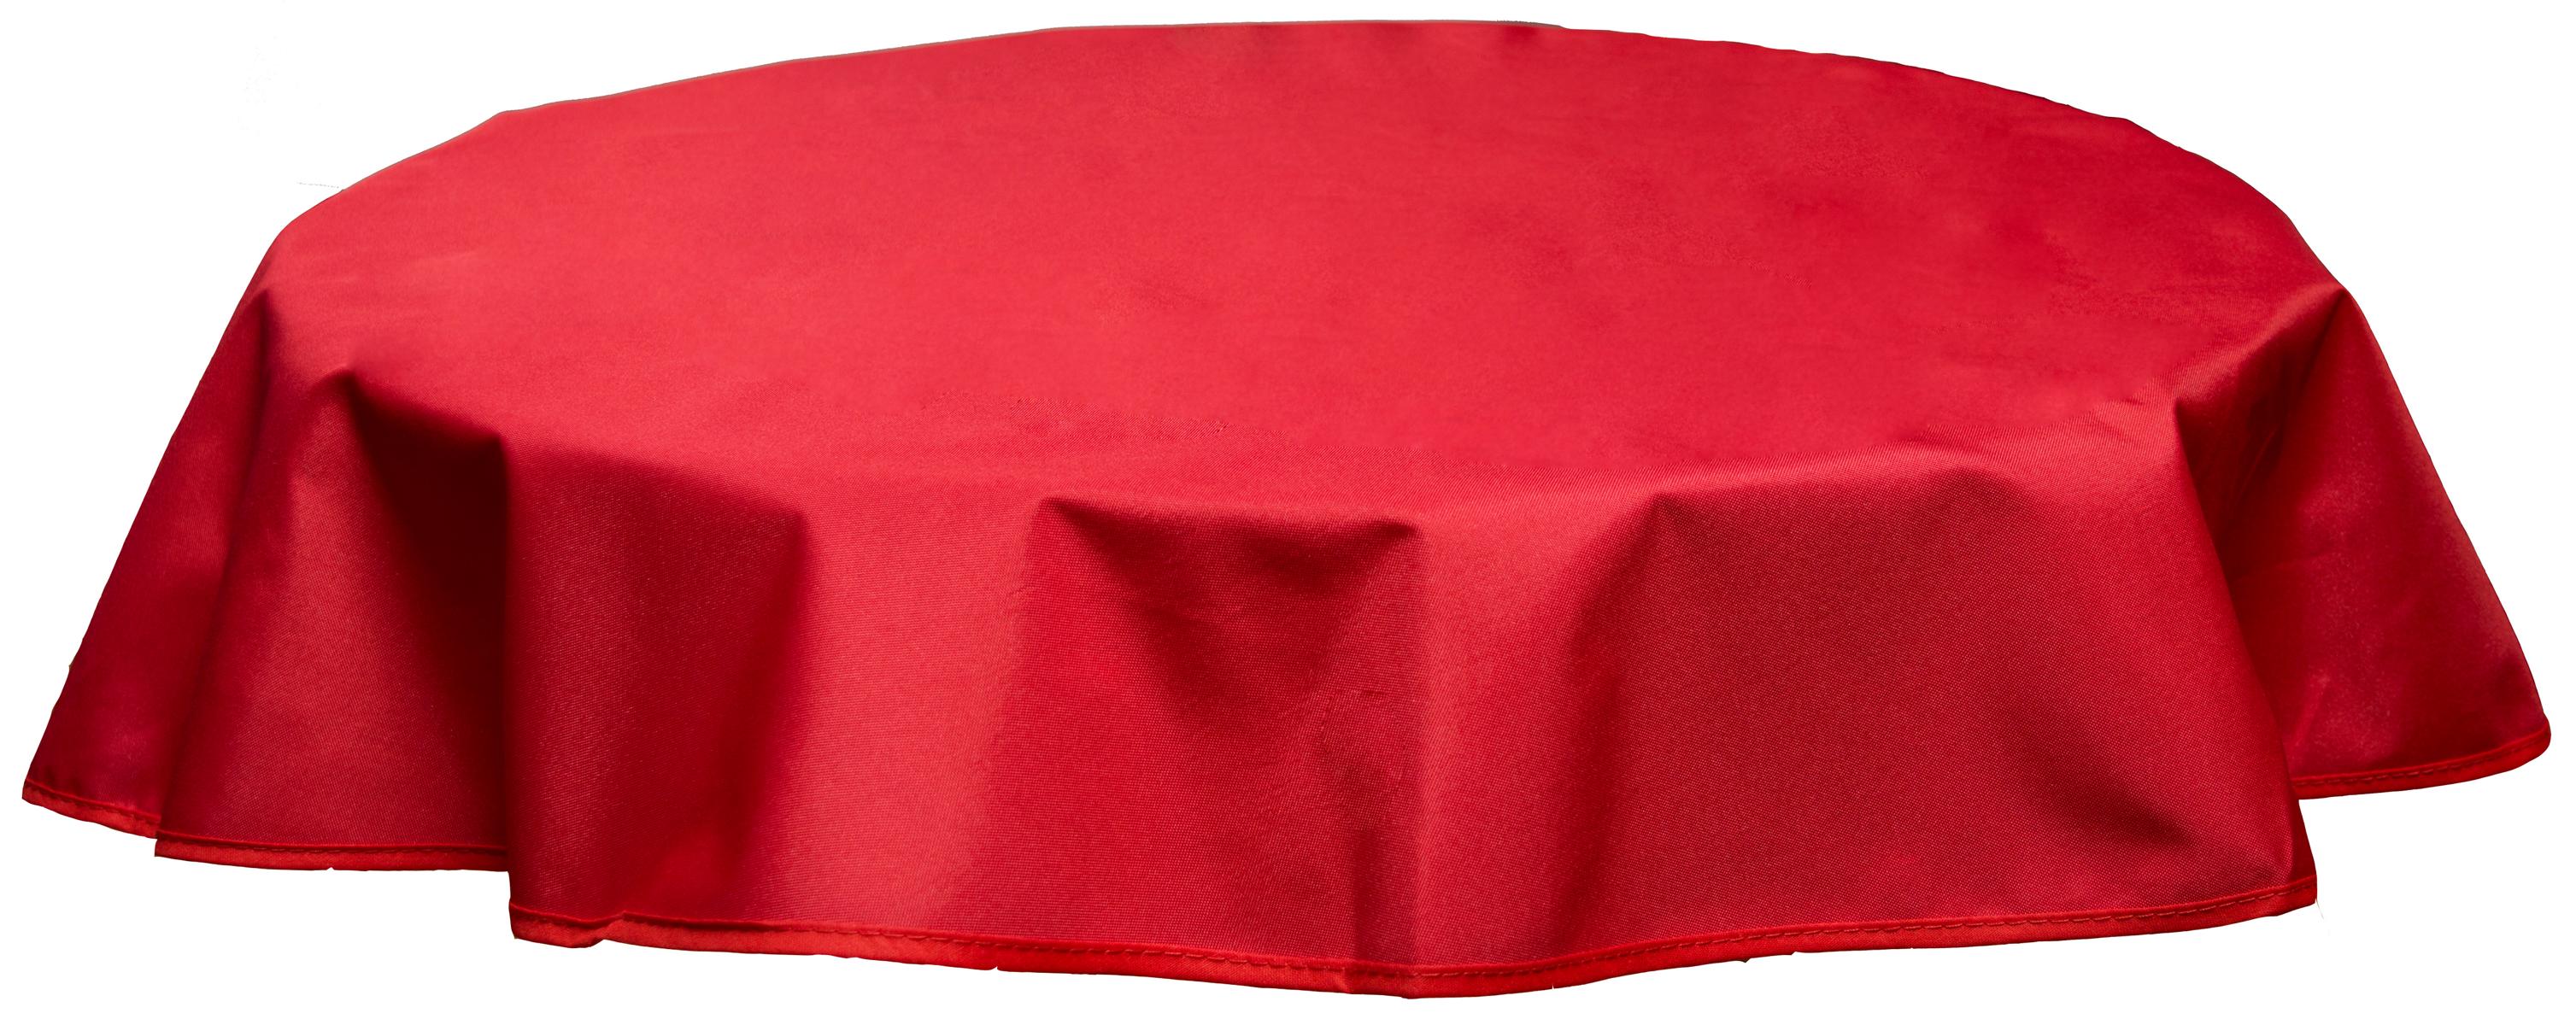 Runde Tischdecke 120cm wasserabweisend 100% Polyester in rot